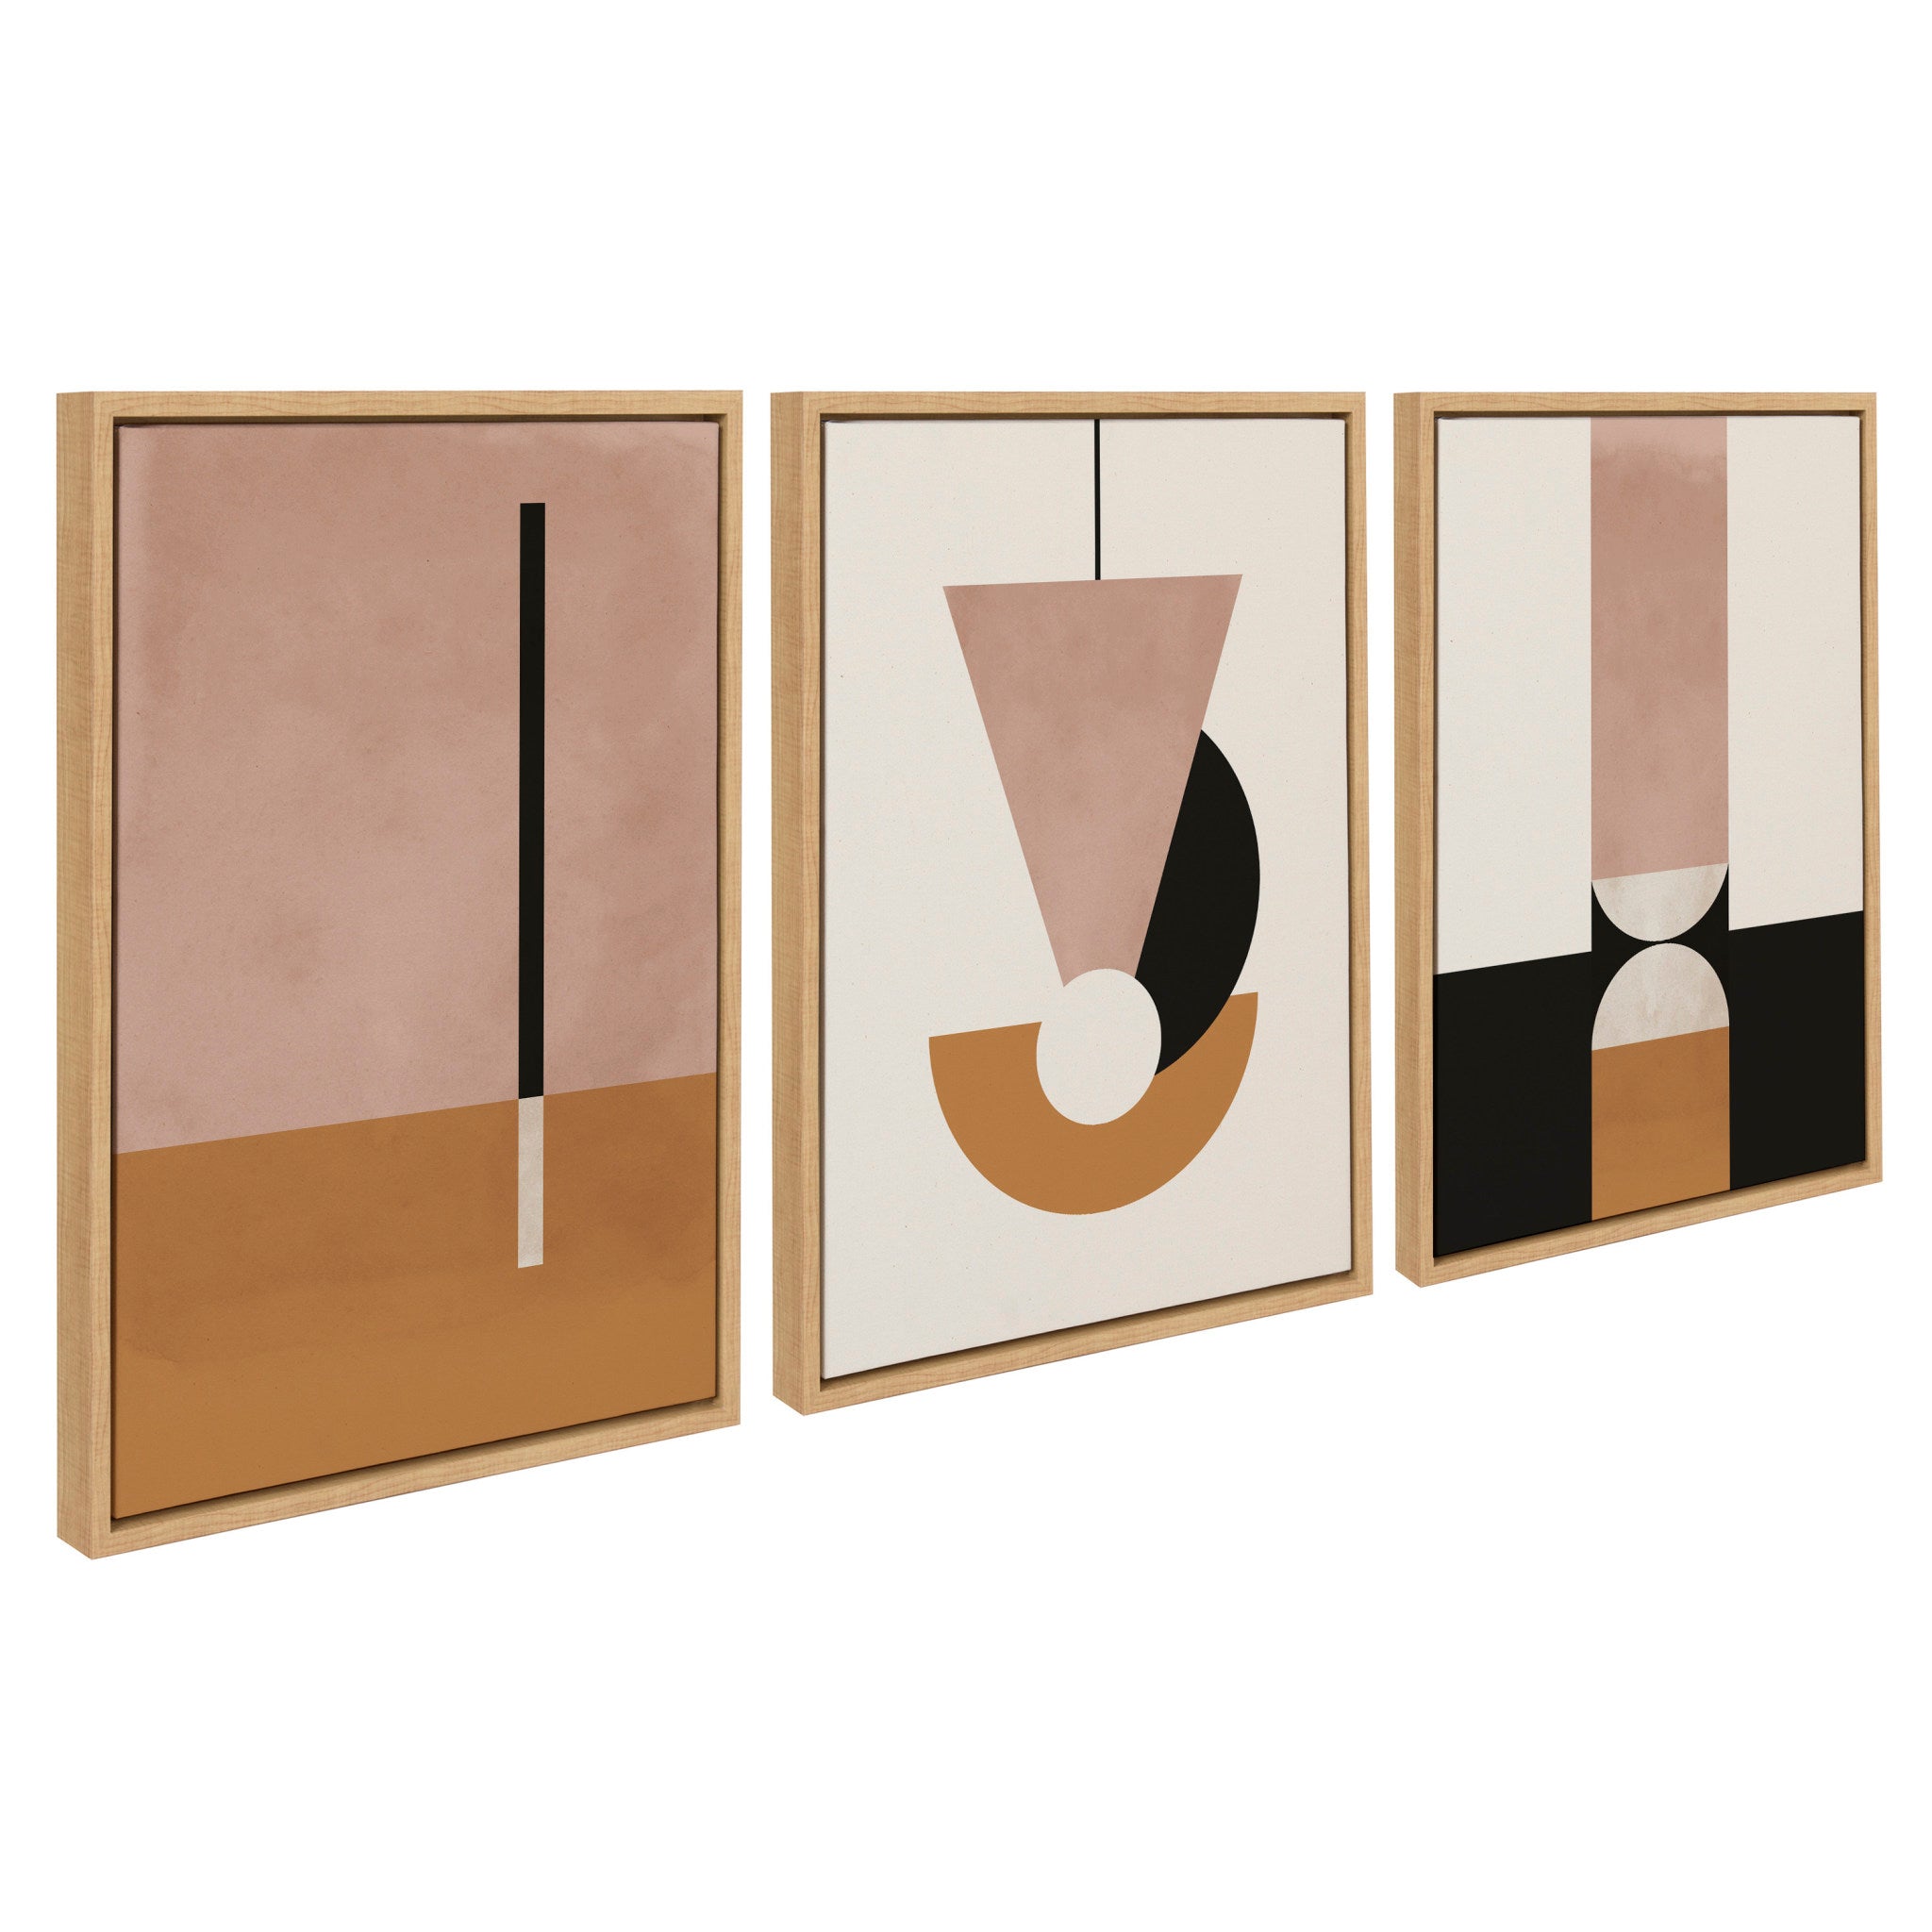 Sylvie Venice 1, 2 and 3 Framed Canvas Art Set by Alexander Ginzburg